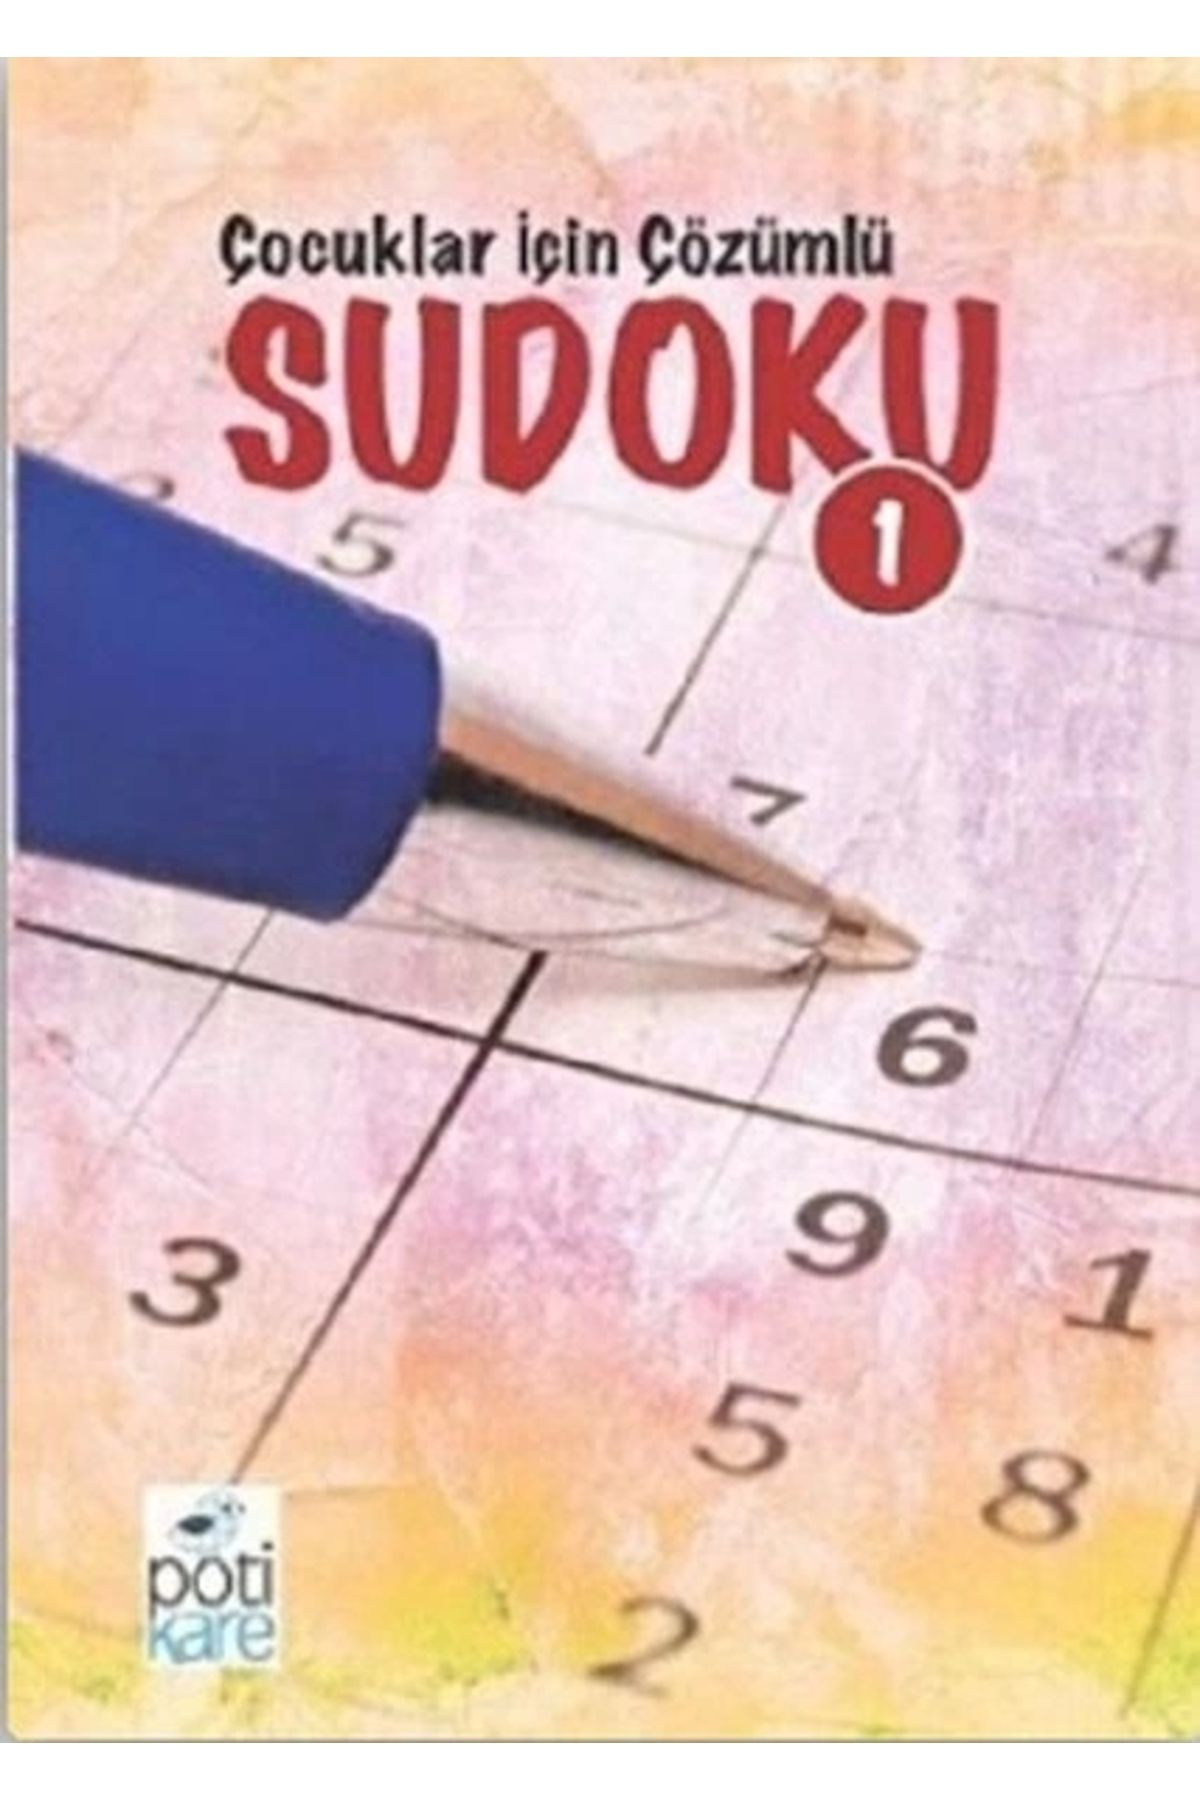 Pötikare Yayınları Çocuklar Için Çözümlü Sudoku 1